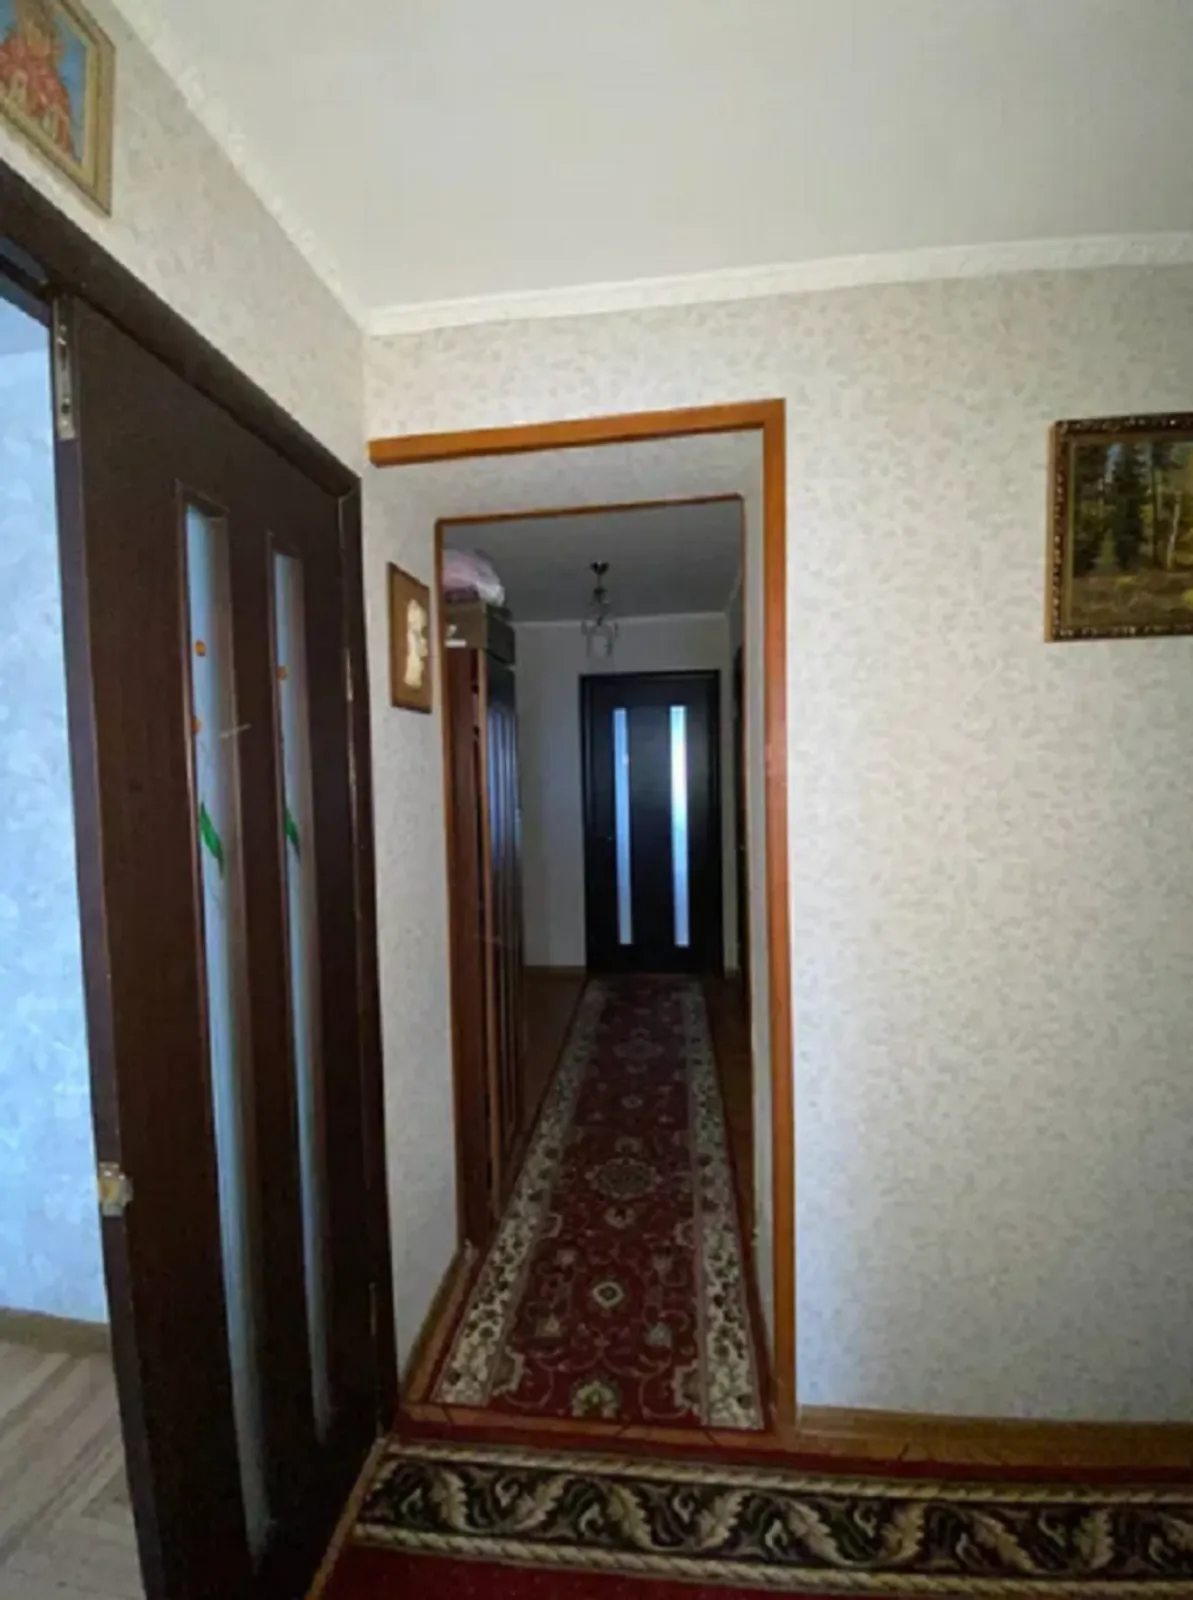 Продаж 3 кімнатної квартири/64 м.кв/ р-н Цукровий завод